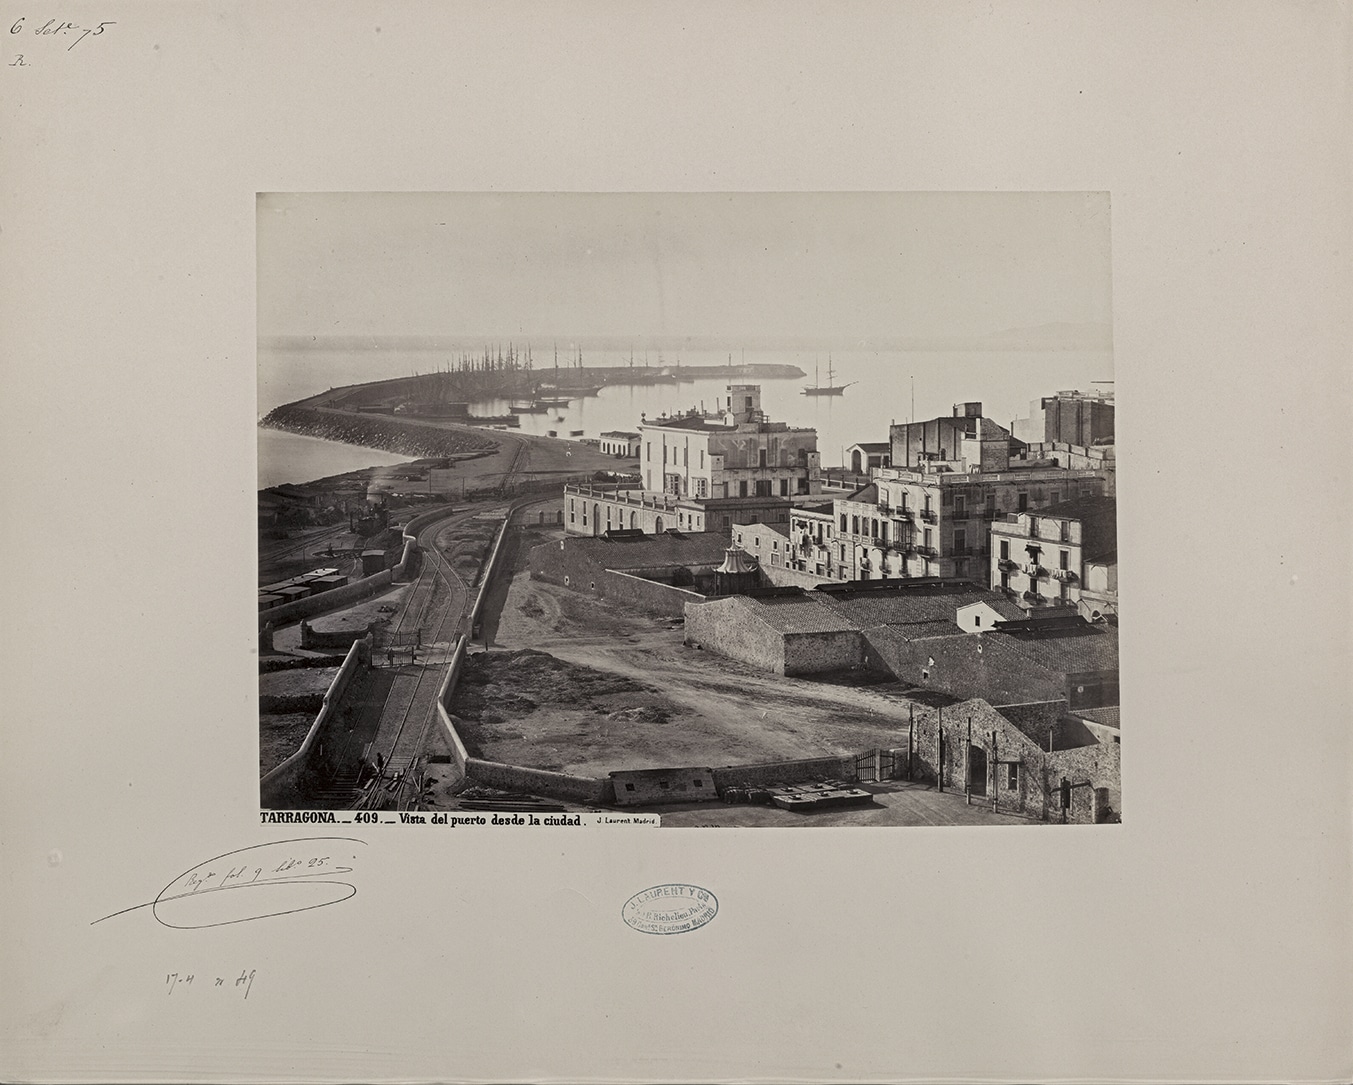 Tarragona. Vista del puerto desde la ciudad, 1871-1872. Biblioteca Nacional de España, Madrid